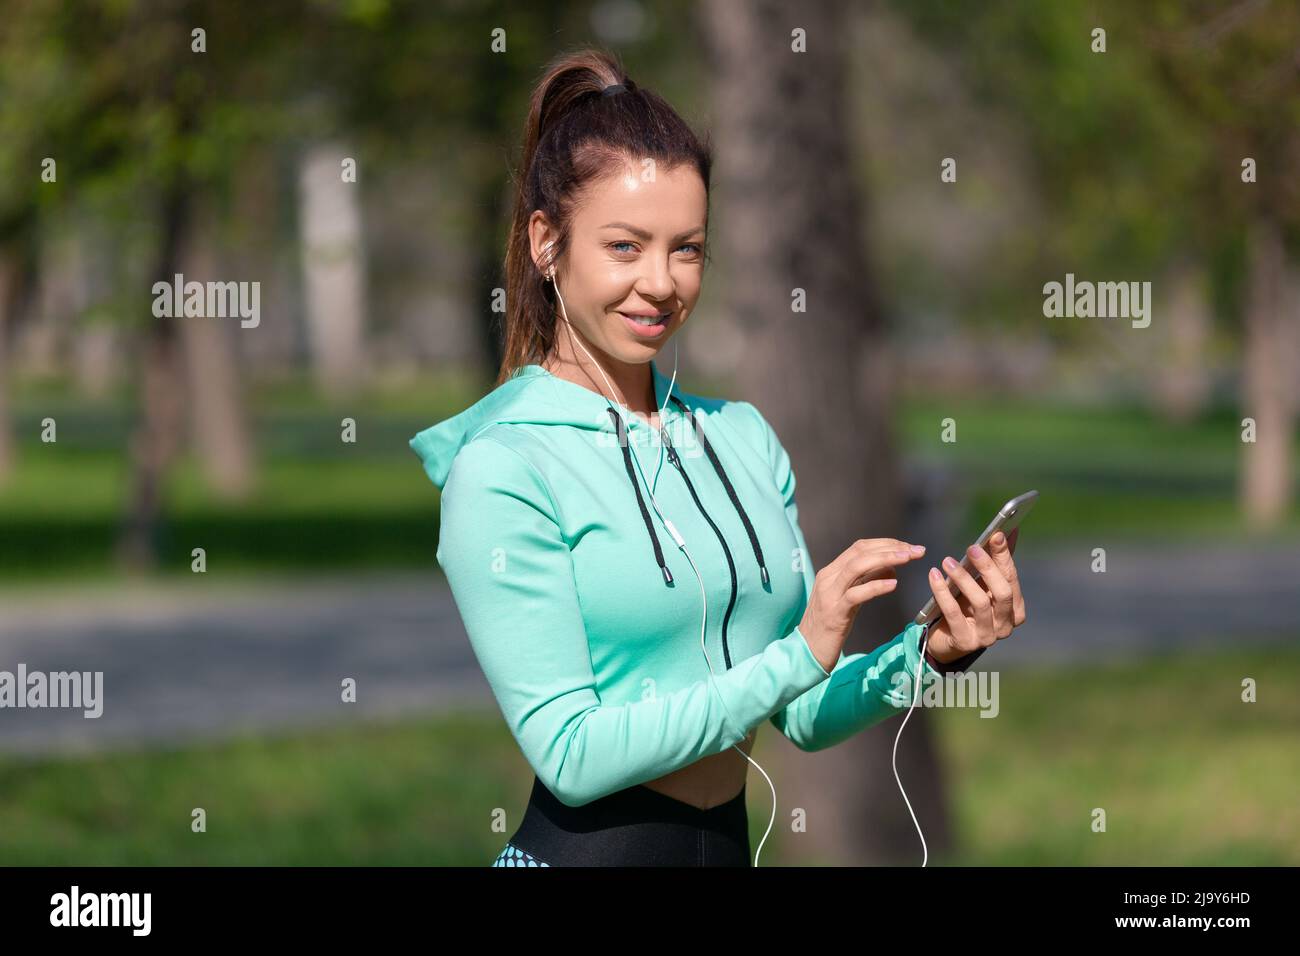 Foto einer jungen Frau, die die Musik auf ihrem Smartphone für eine gute Joggingstimmung aufsetzt. Das Konzept, sich in guter Verfassung zu halten. Stockfoto